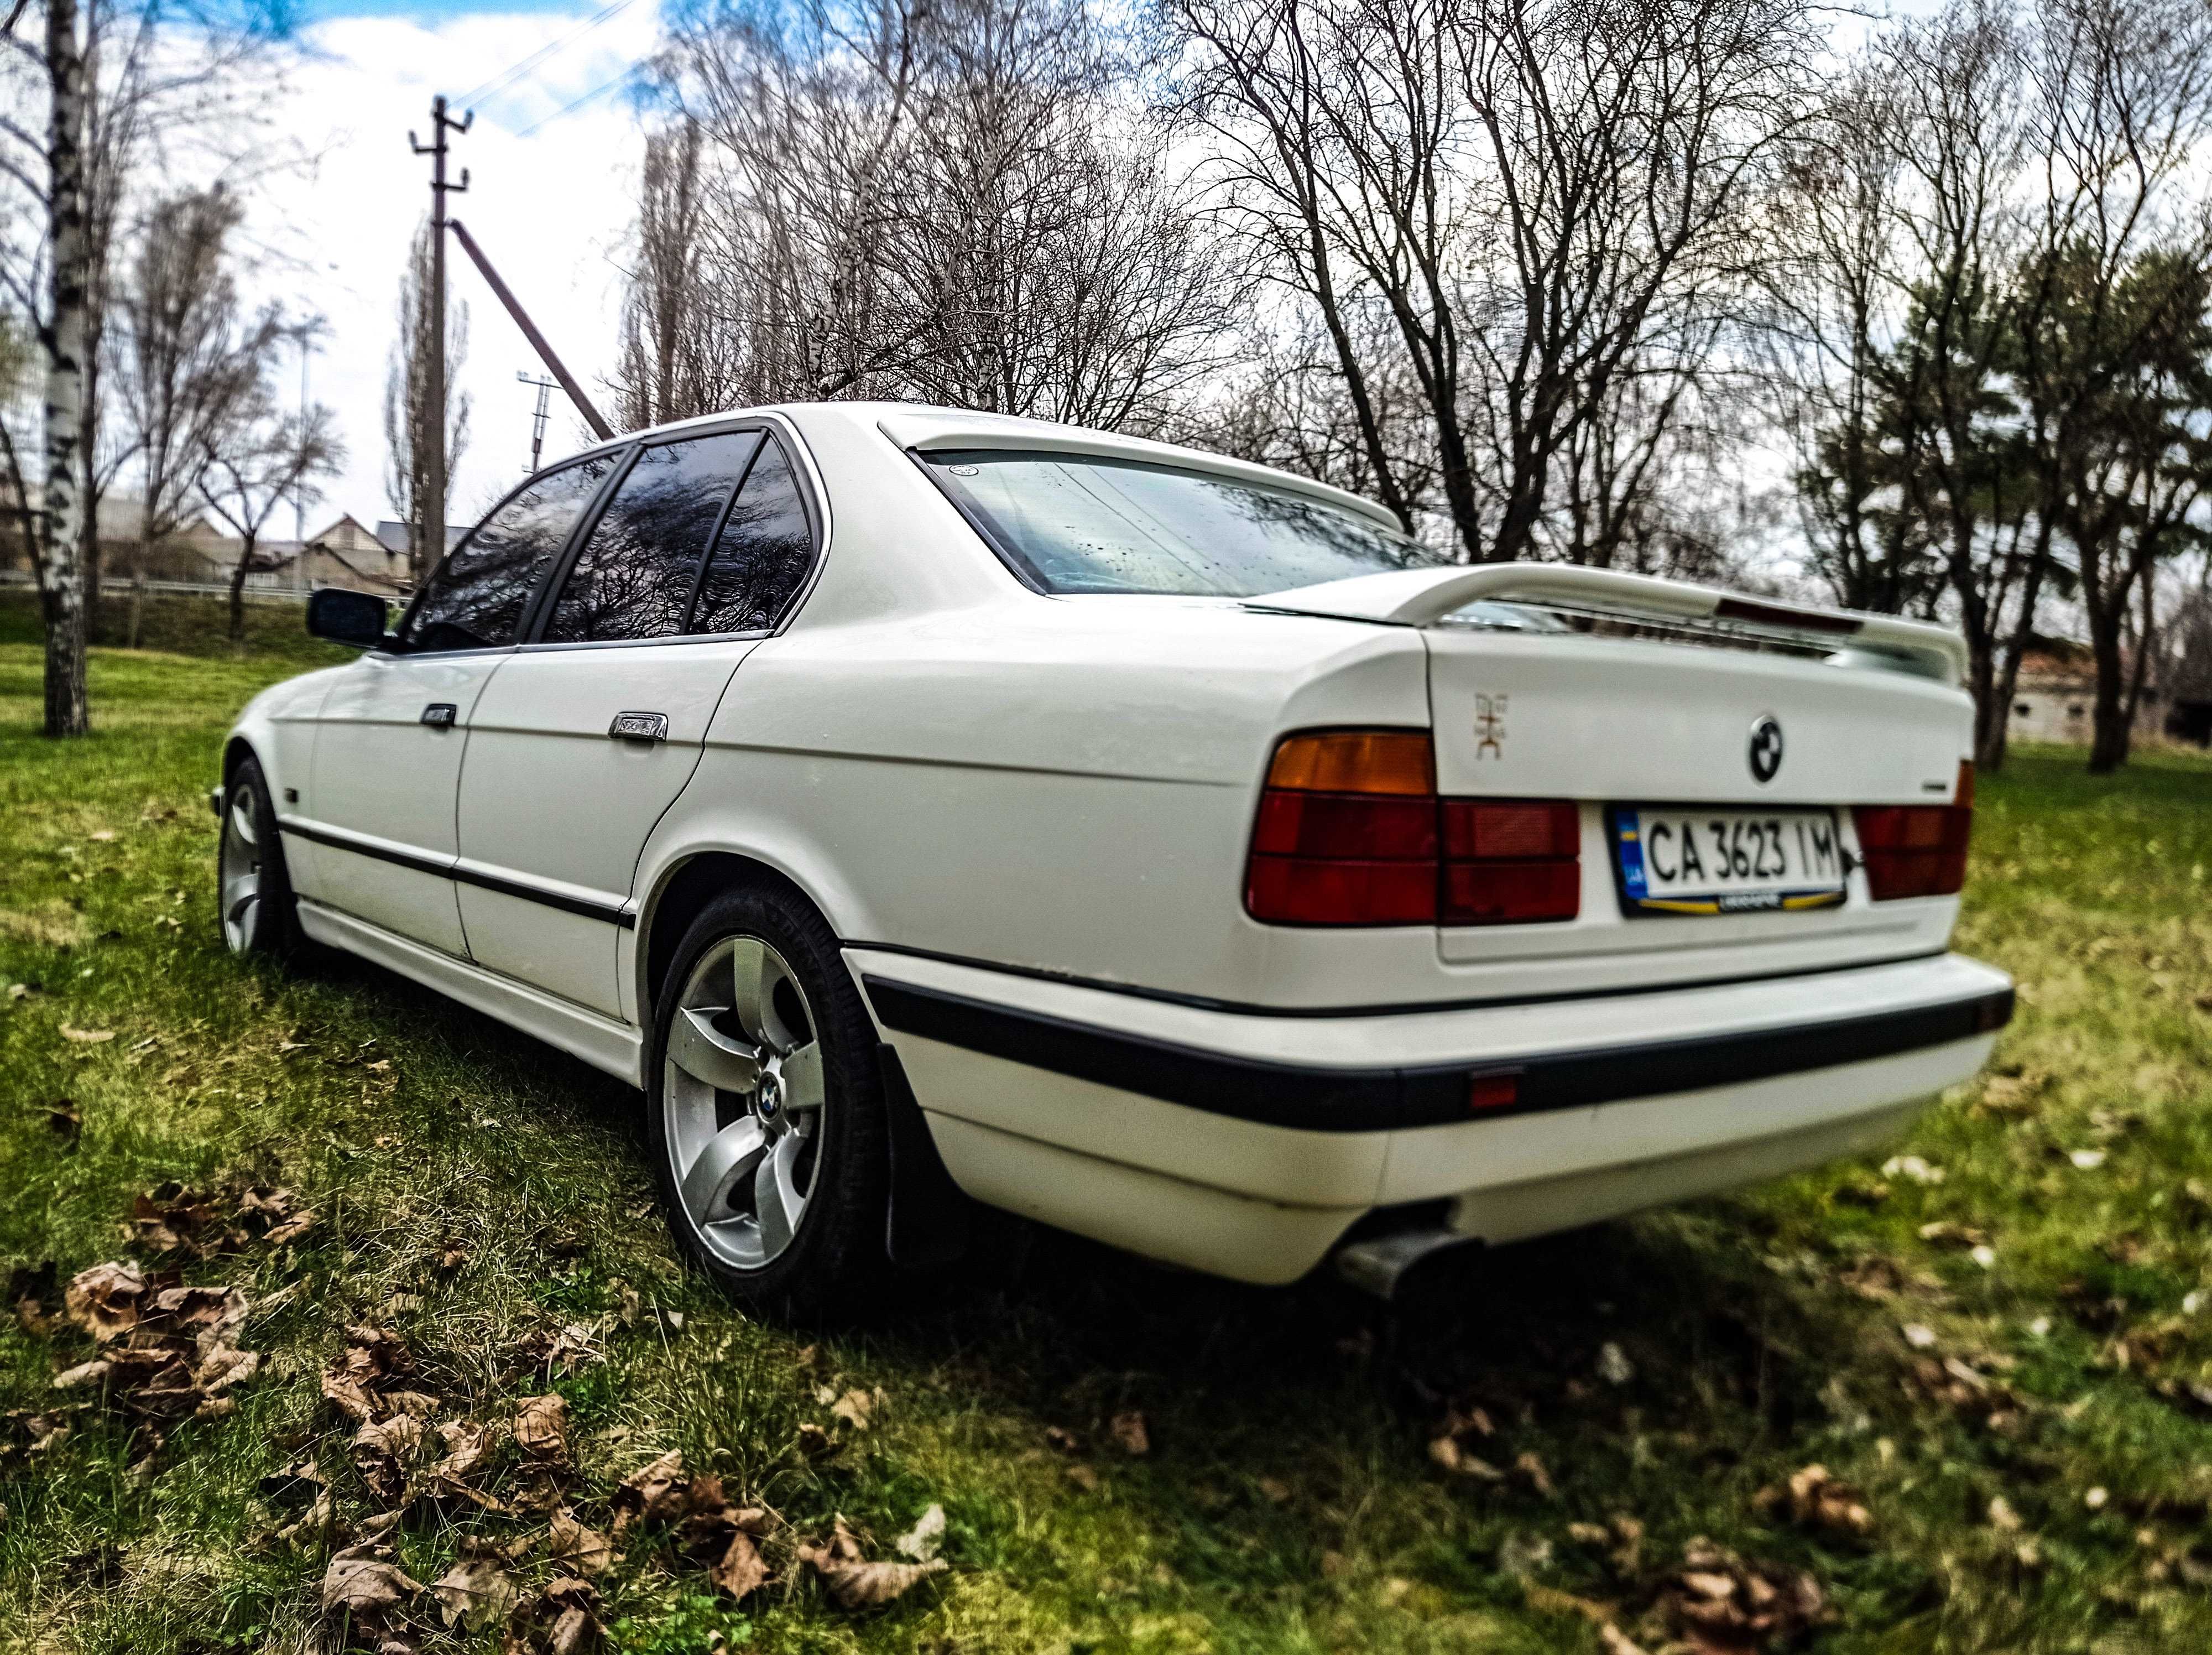 BMW 5 series m50b25